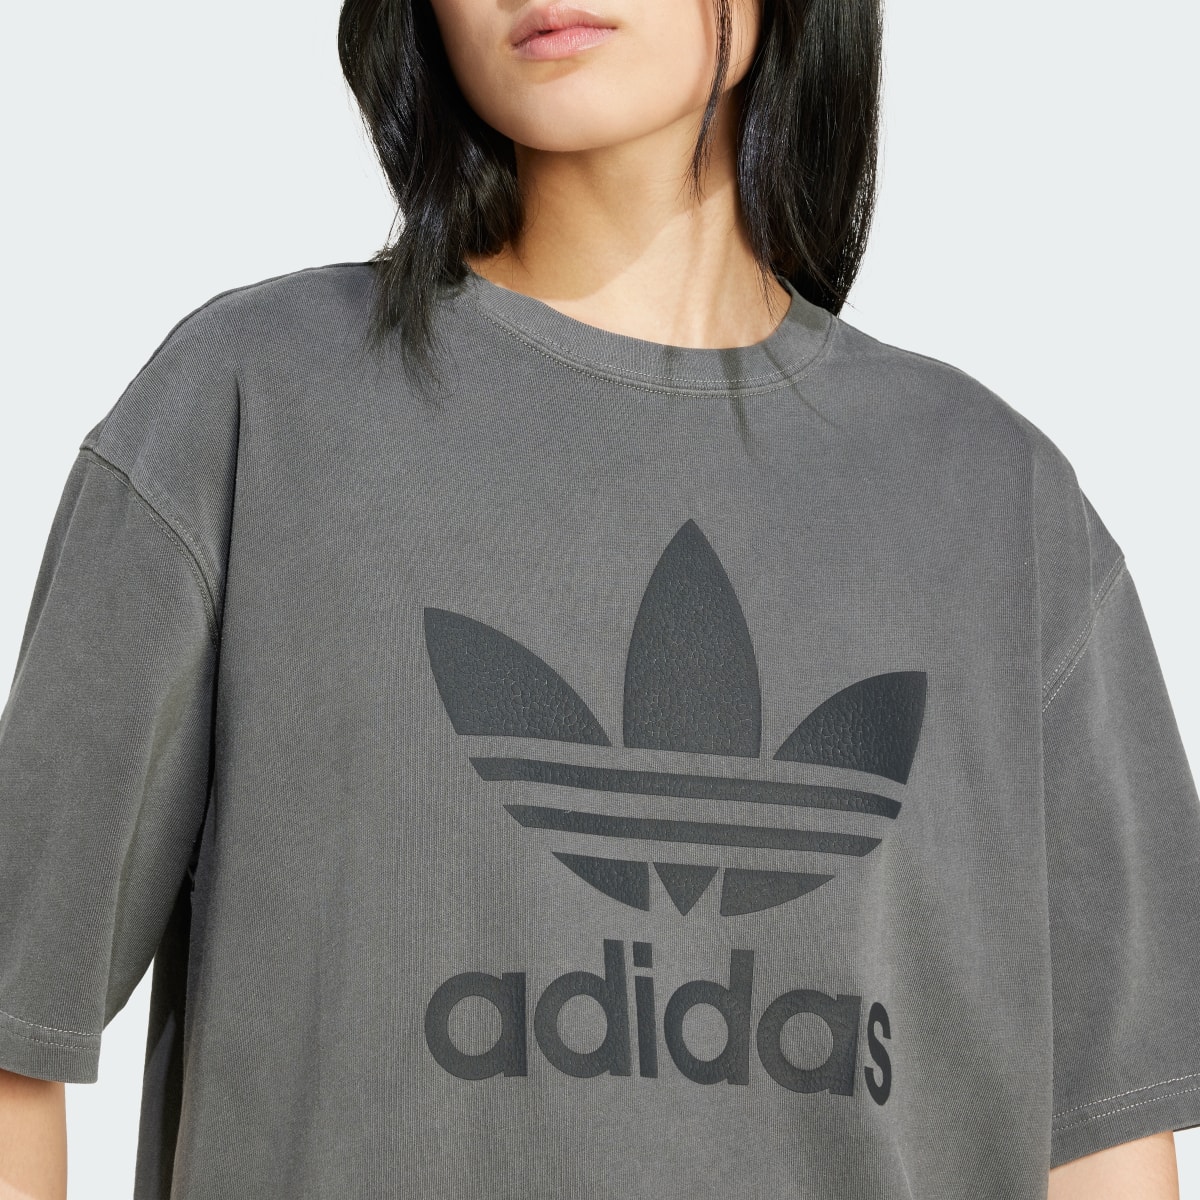 Adidas T-shirt Trèfle délavé. 6